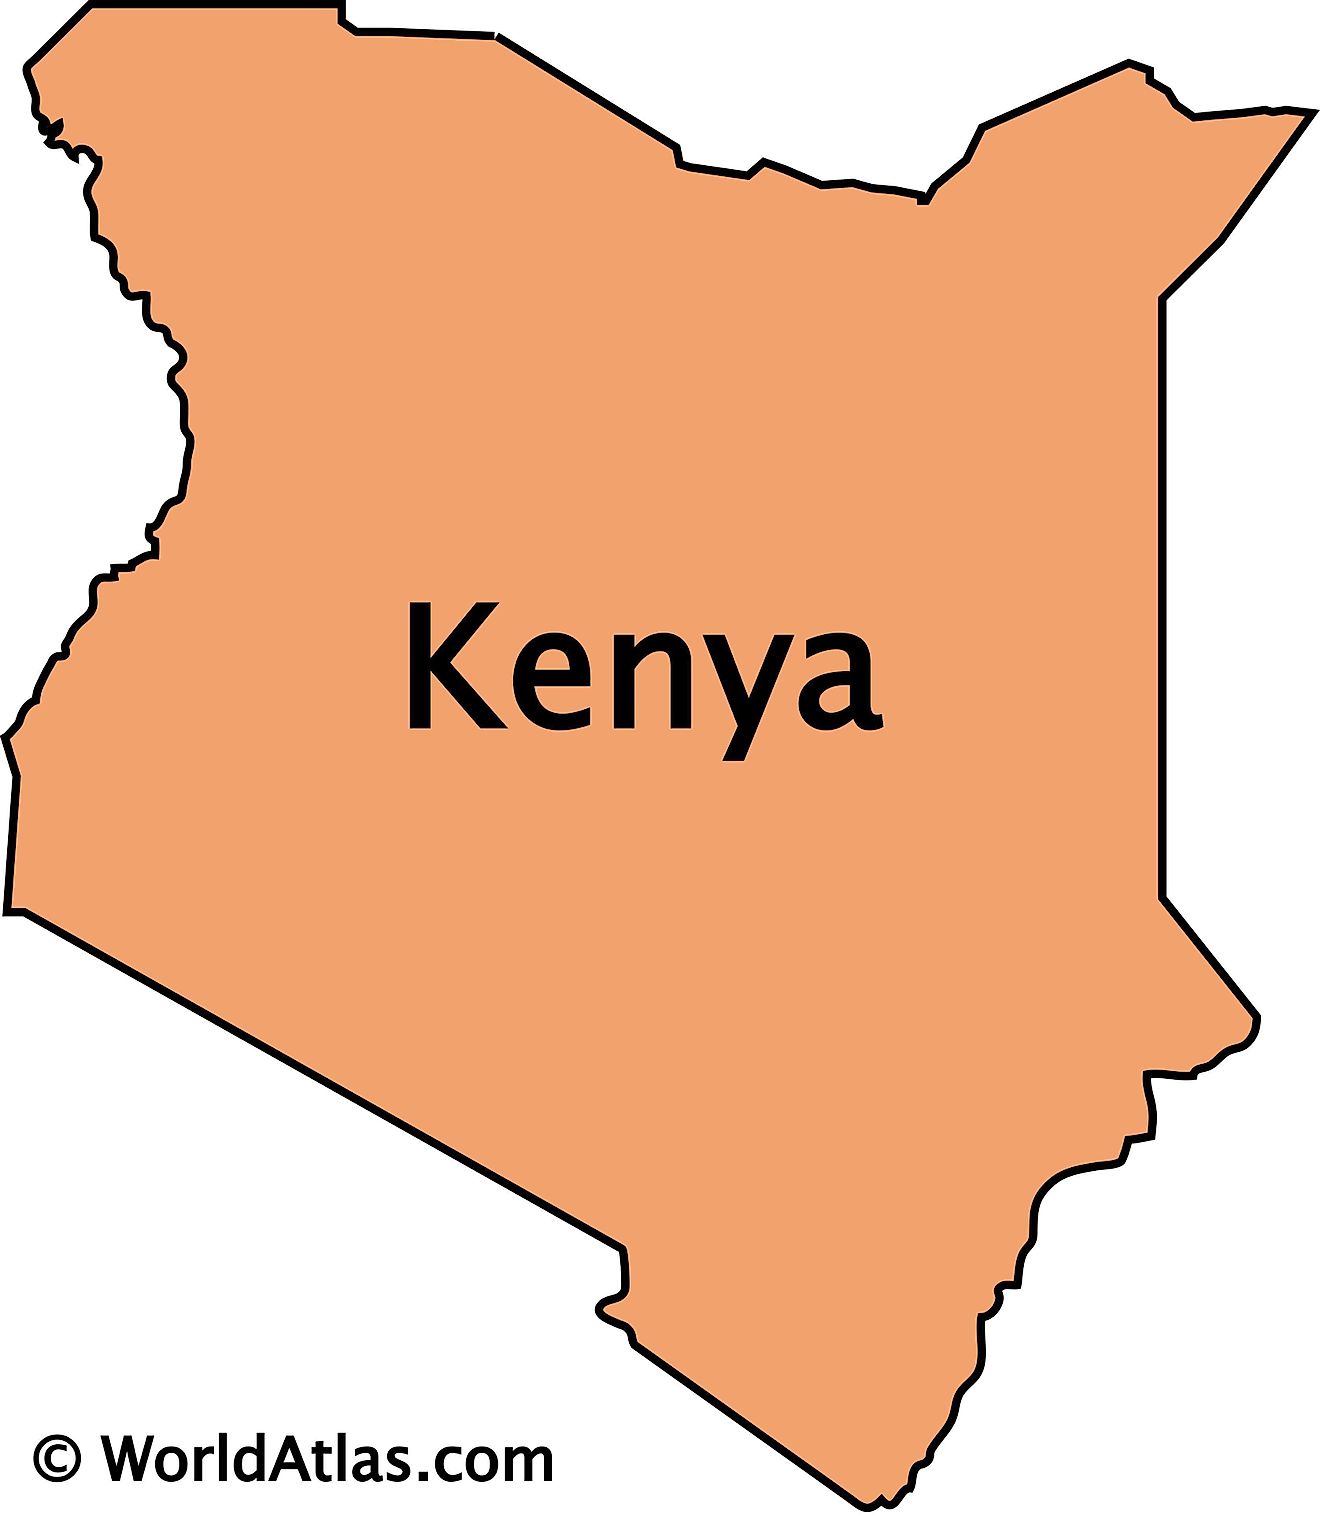 Sketch Map Of Kenya Kenya Maps & Facts - World Atlas